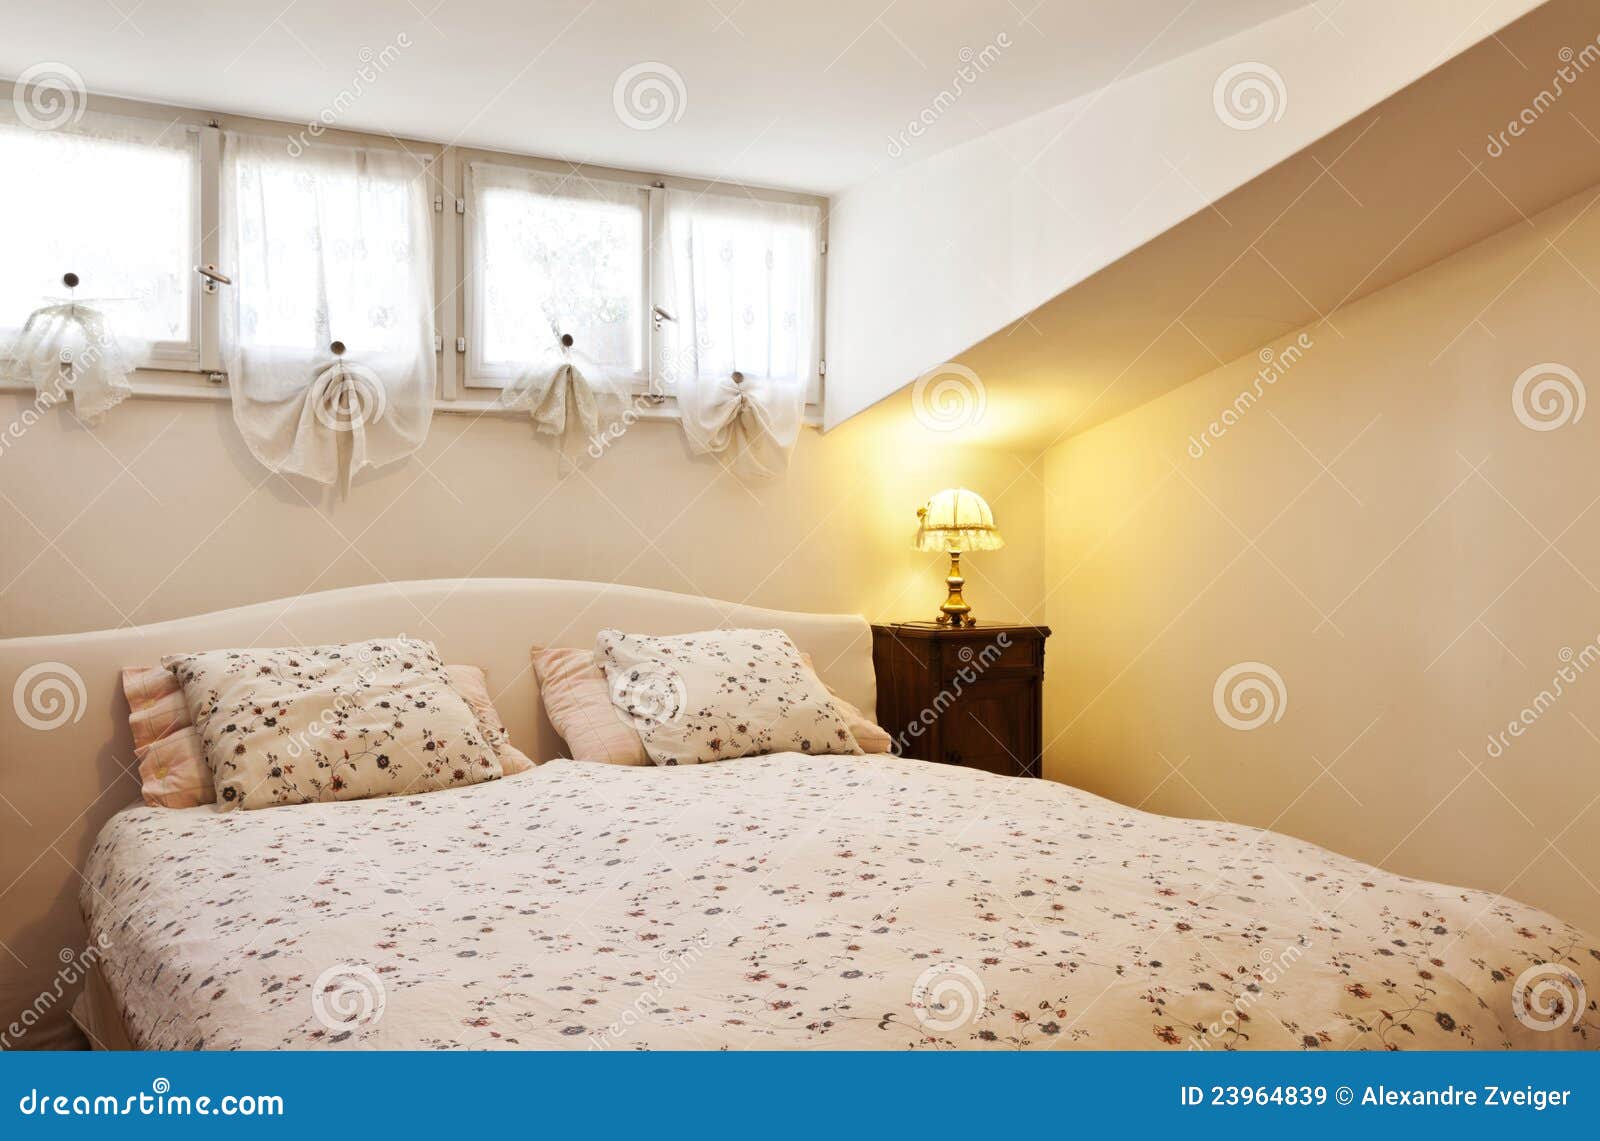 Kleiner Dachboden Versorgt Schlafzimmer Stockbild Bild